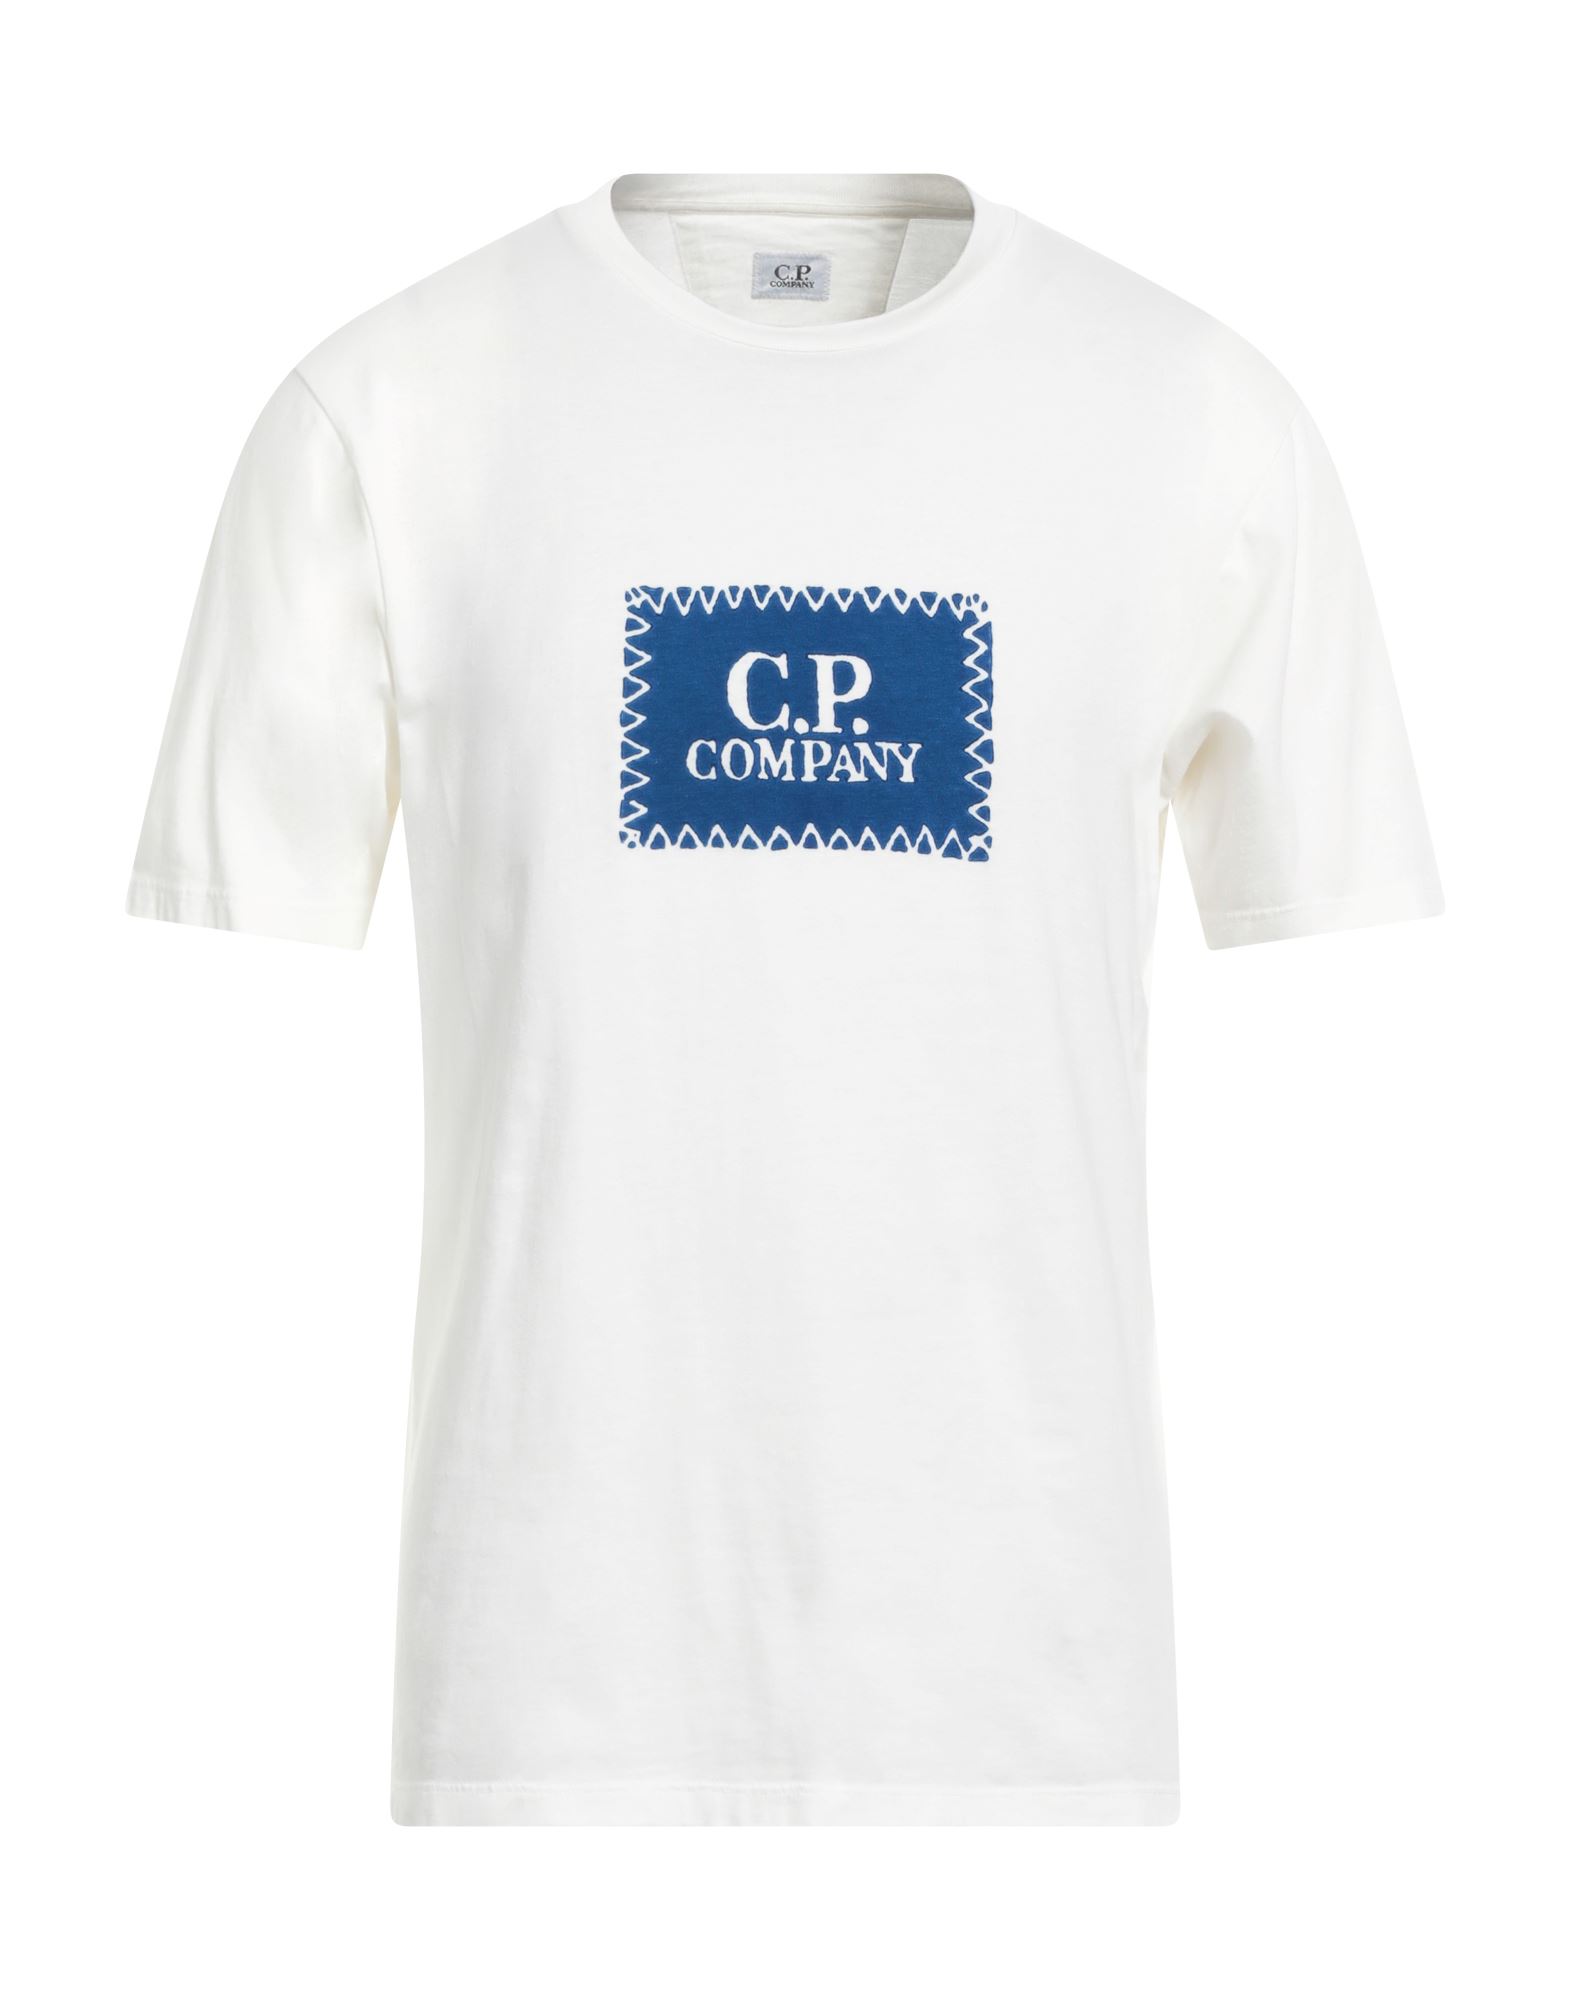 C.P. COMPANY T-shirts Herren Weiß von C.P. COMPANY